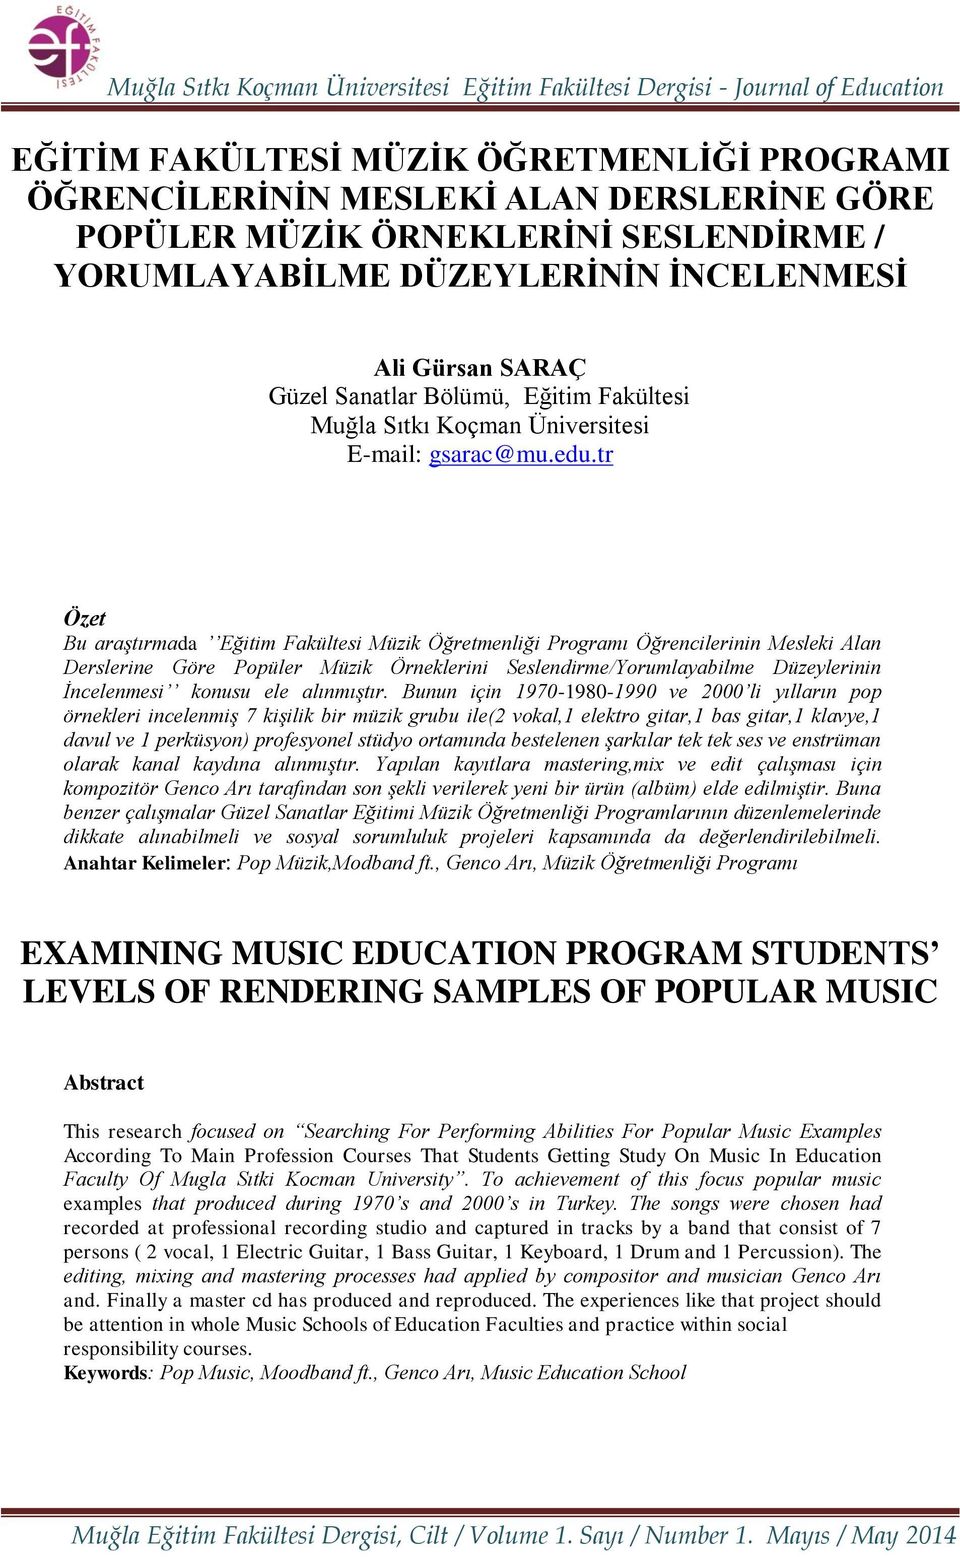 tr Özet Bu araştırmada Eğitim Fakültesi Müzik Öğretmenliği Programı Öğrencilerinin Mesleki Alan Derslerine Göre Popüler Müzik Örneklerini Seslendirme/Yorumlayabilme Düzeylerinin İncelenmesi konusu